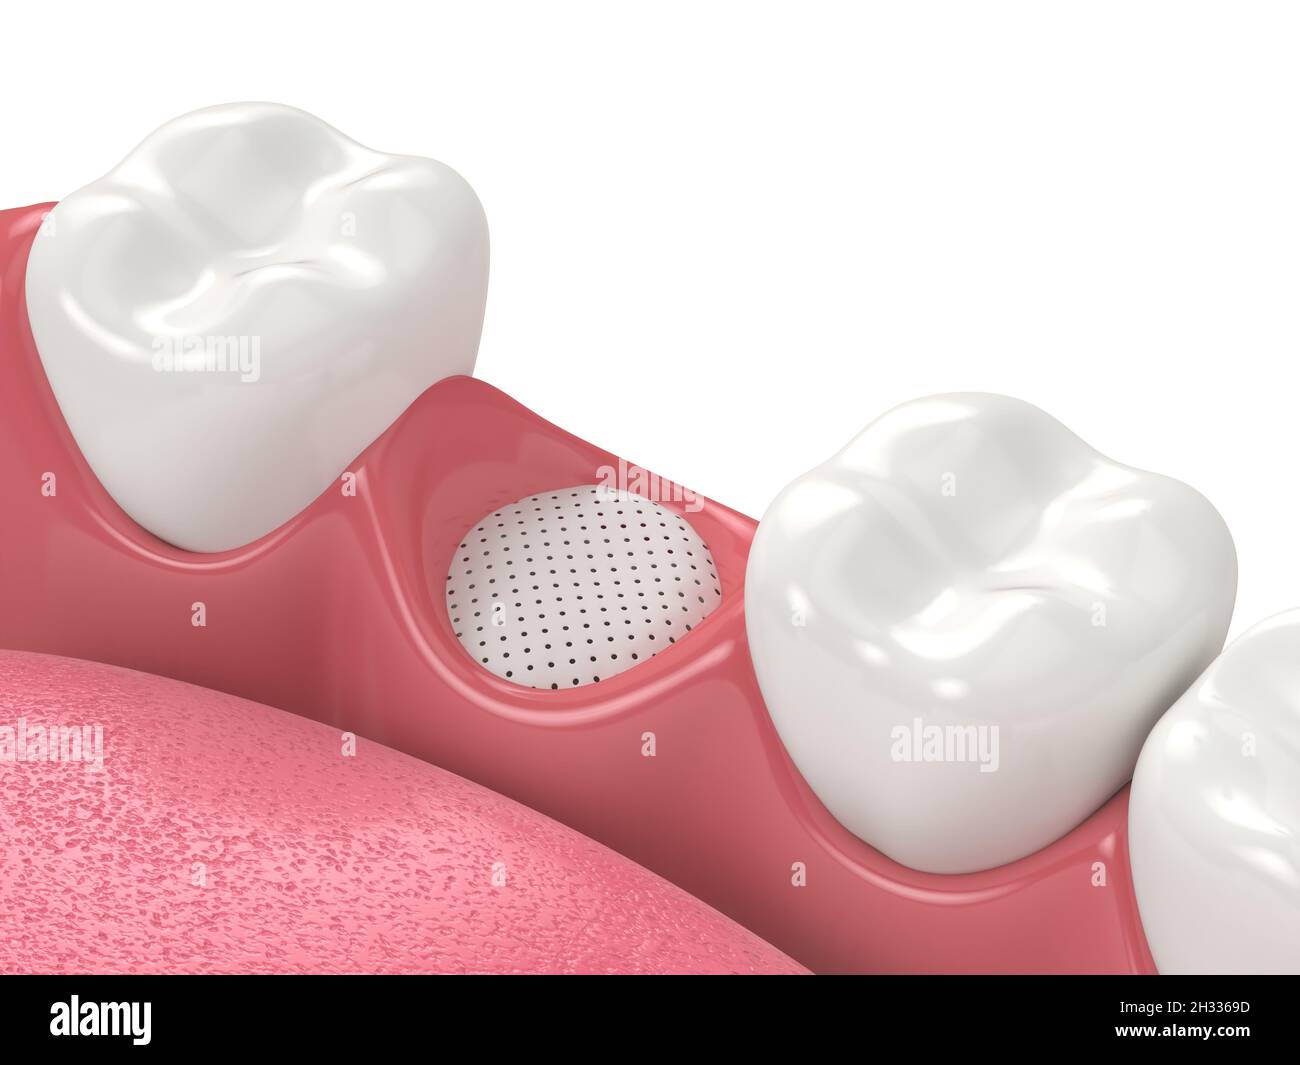 Rendu 3D de la greffe osseuse dentaire avec membrane sur fond blanc.Notion : augmentation osseuse de la mâchoire. Banque D'Images